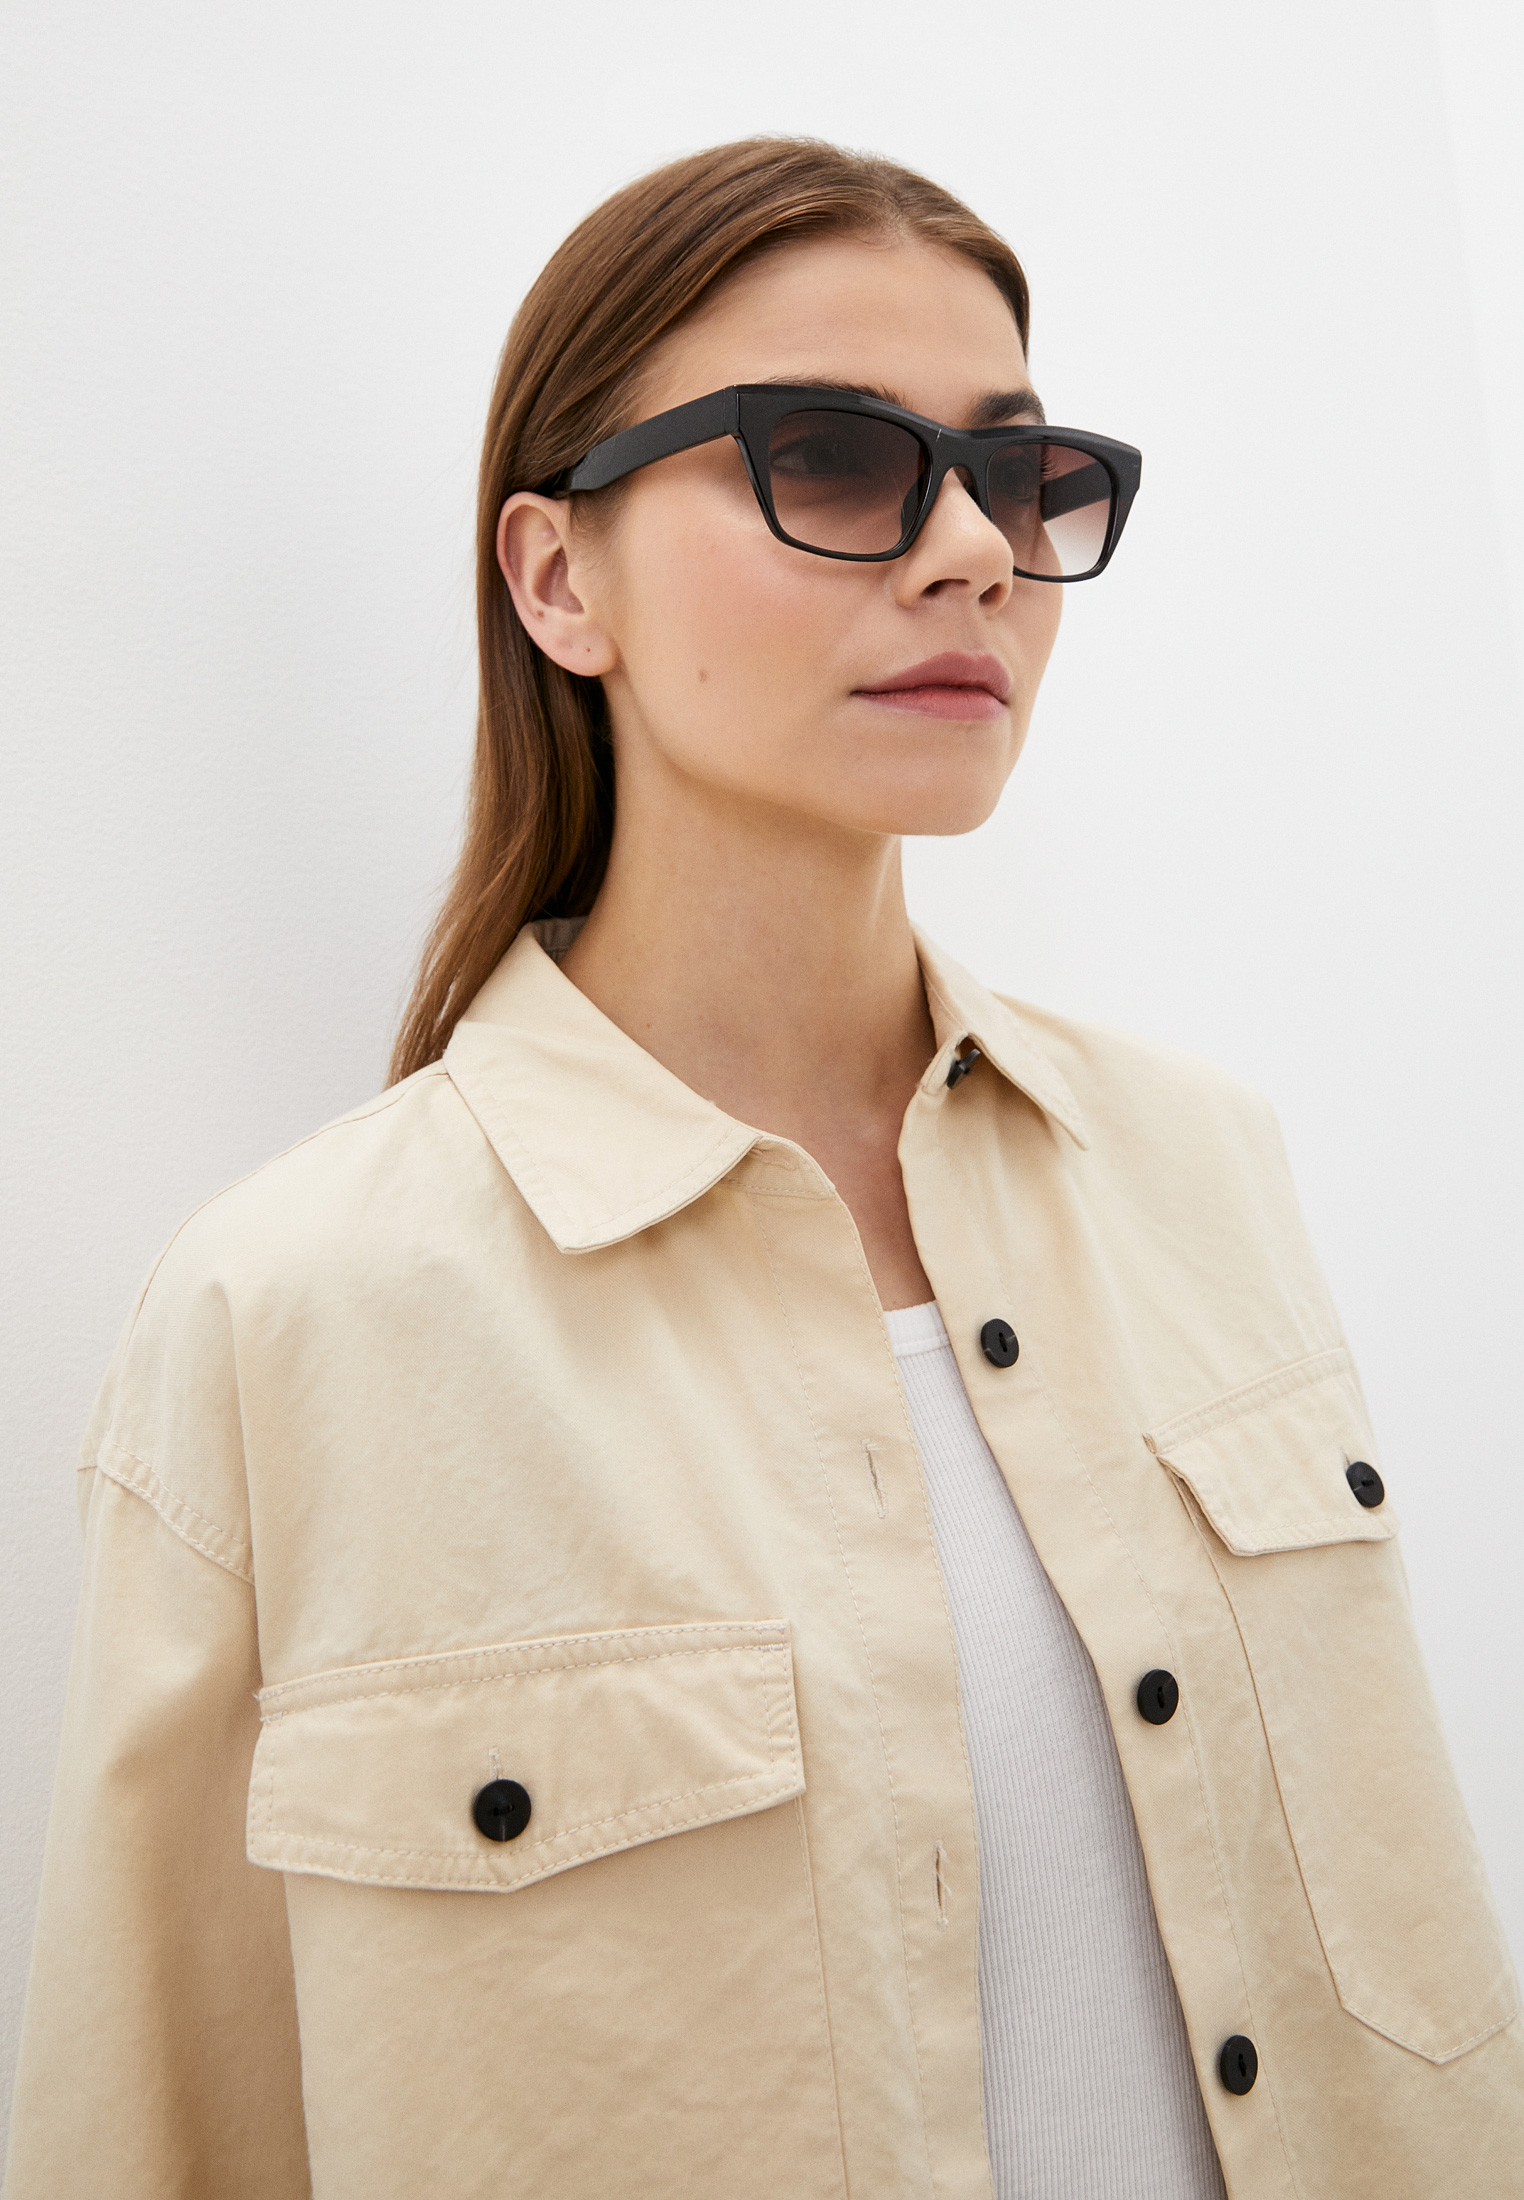 Женские солнцезащитные очки Diora.rim 2056/